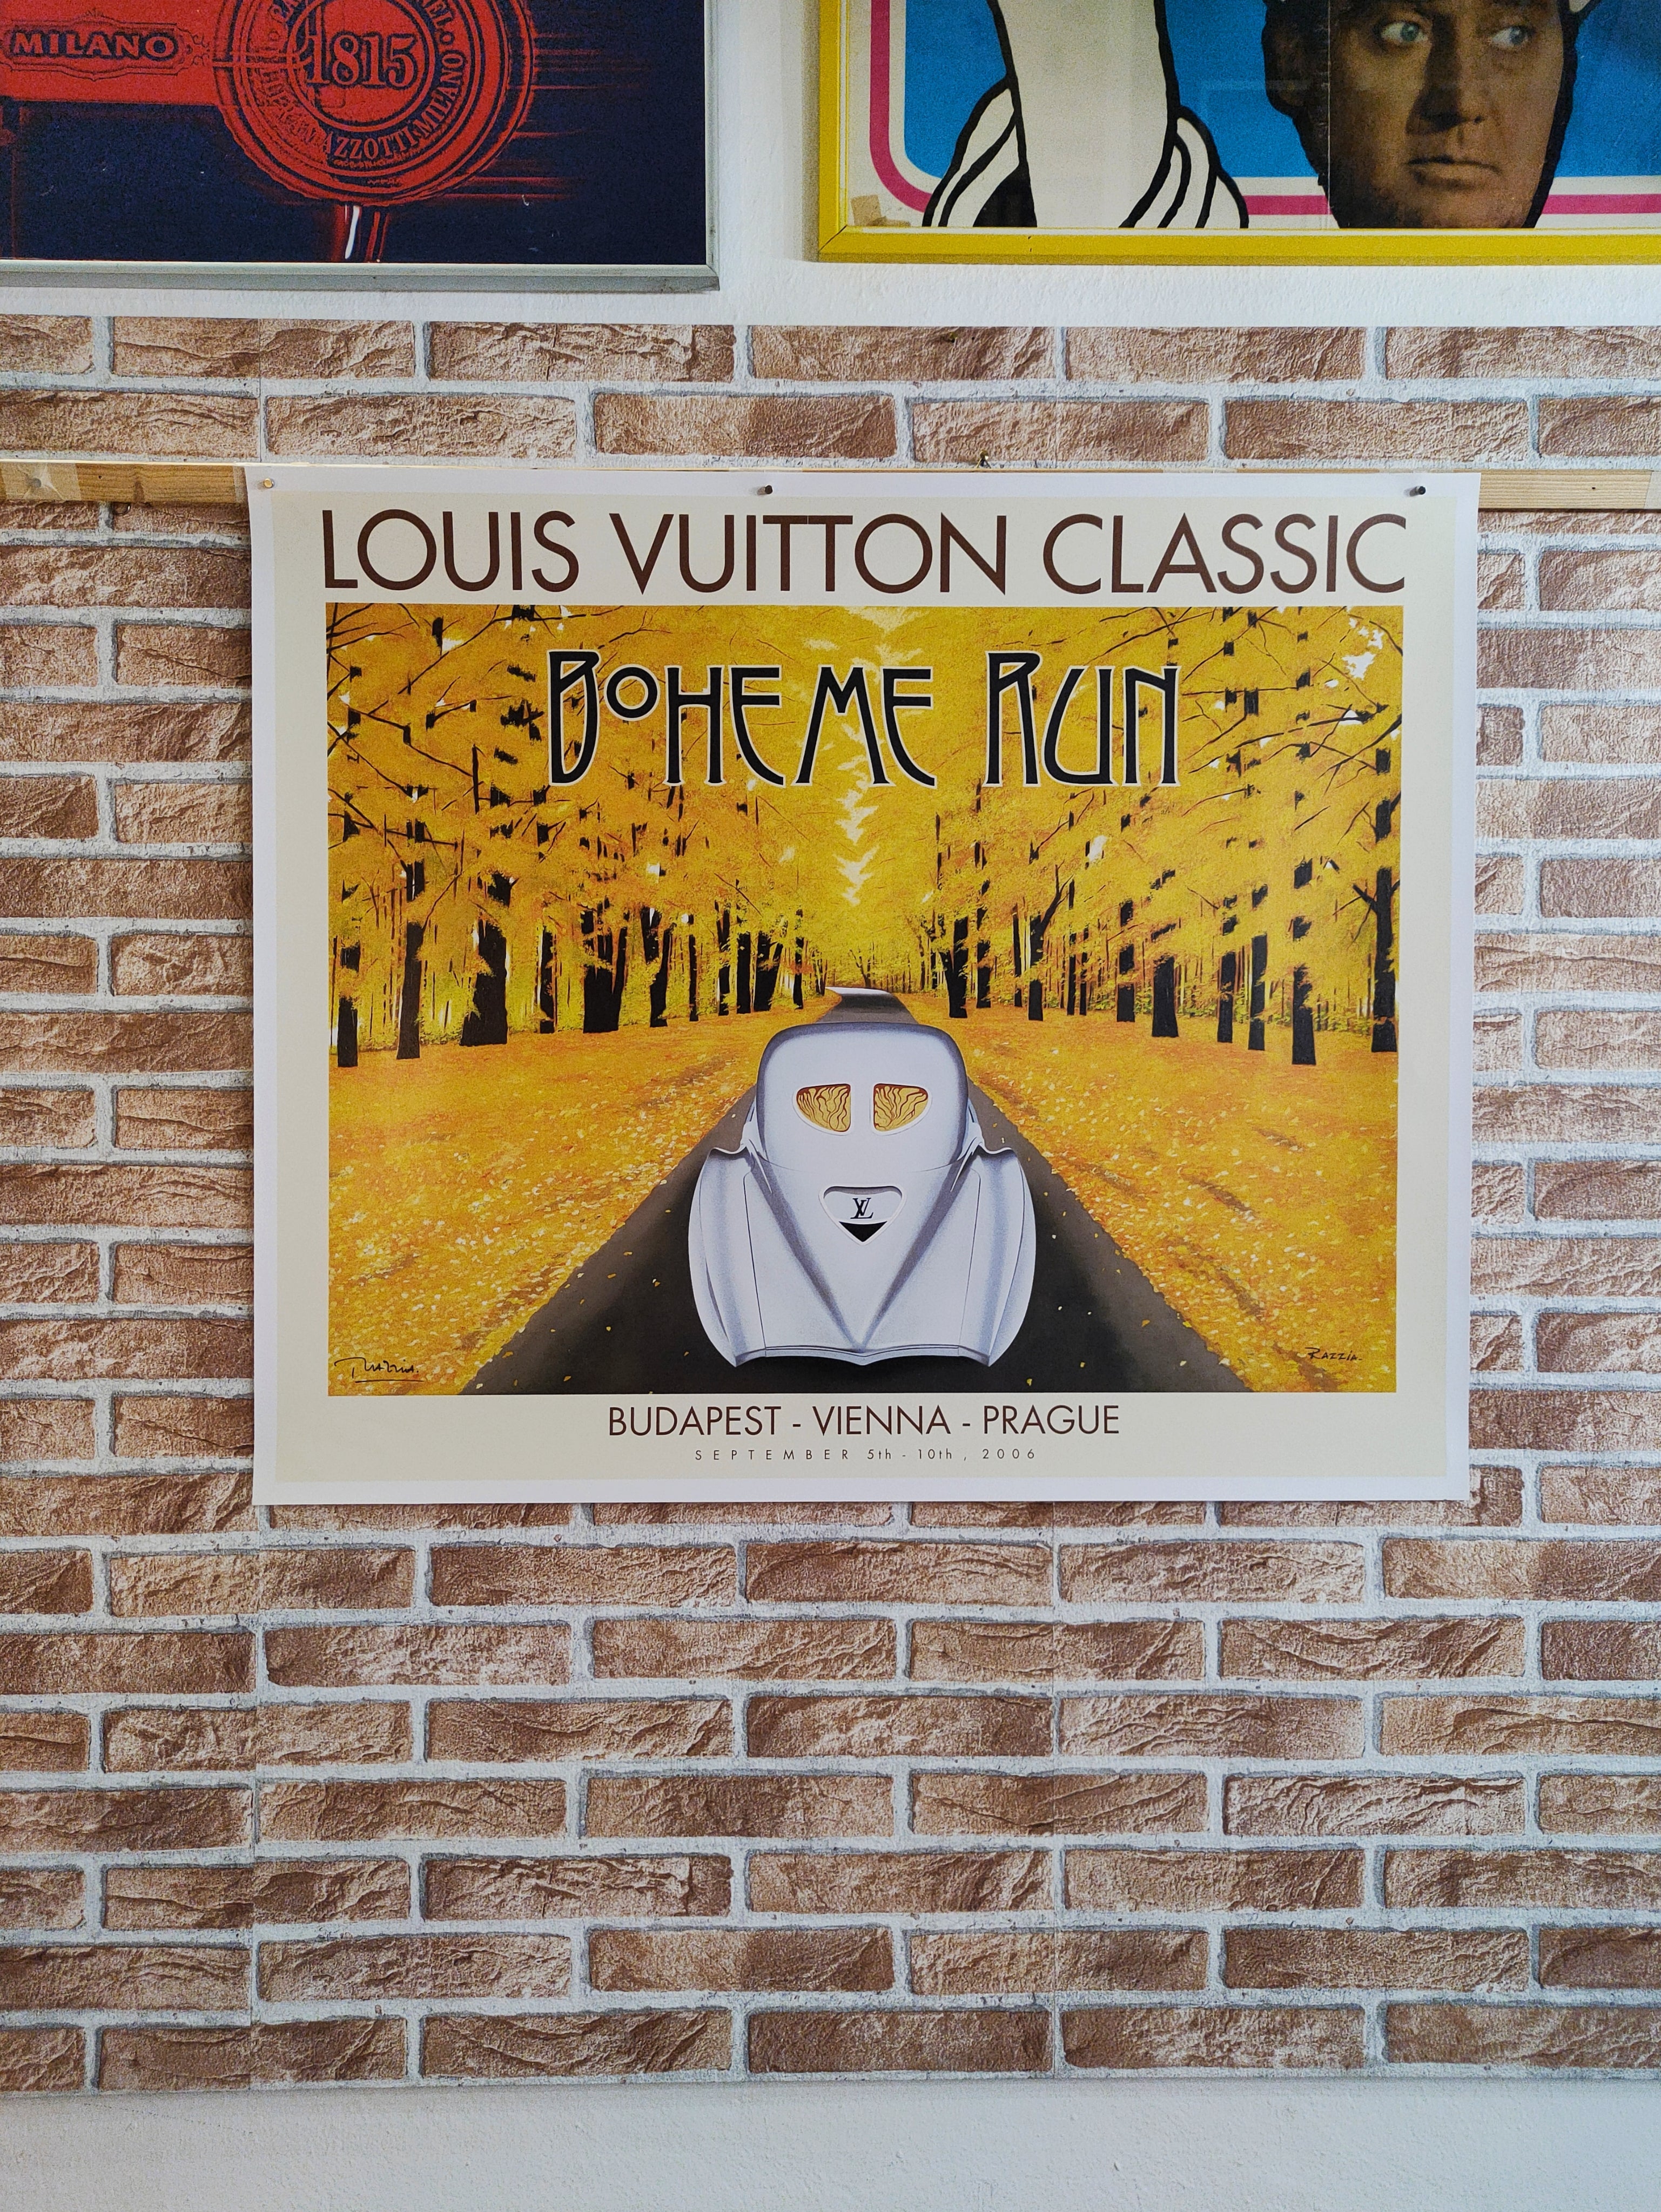 Louis Vuitton classic Boheme run - kolektiv 